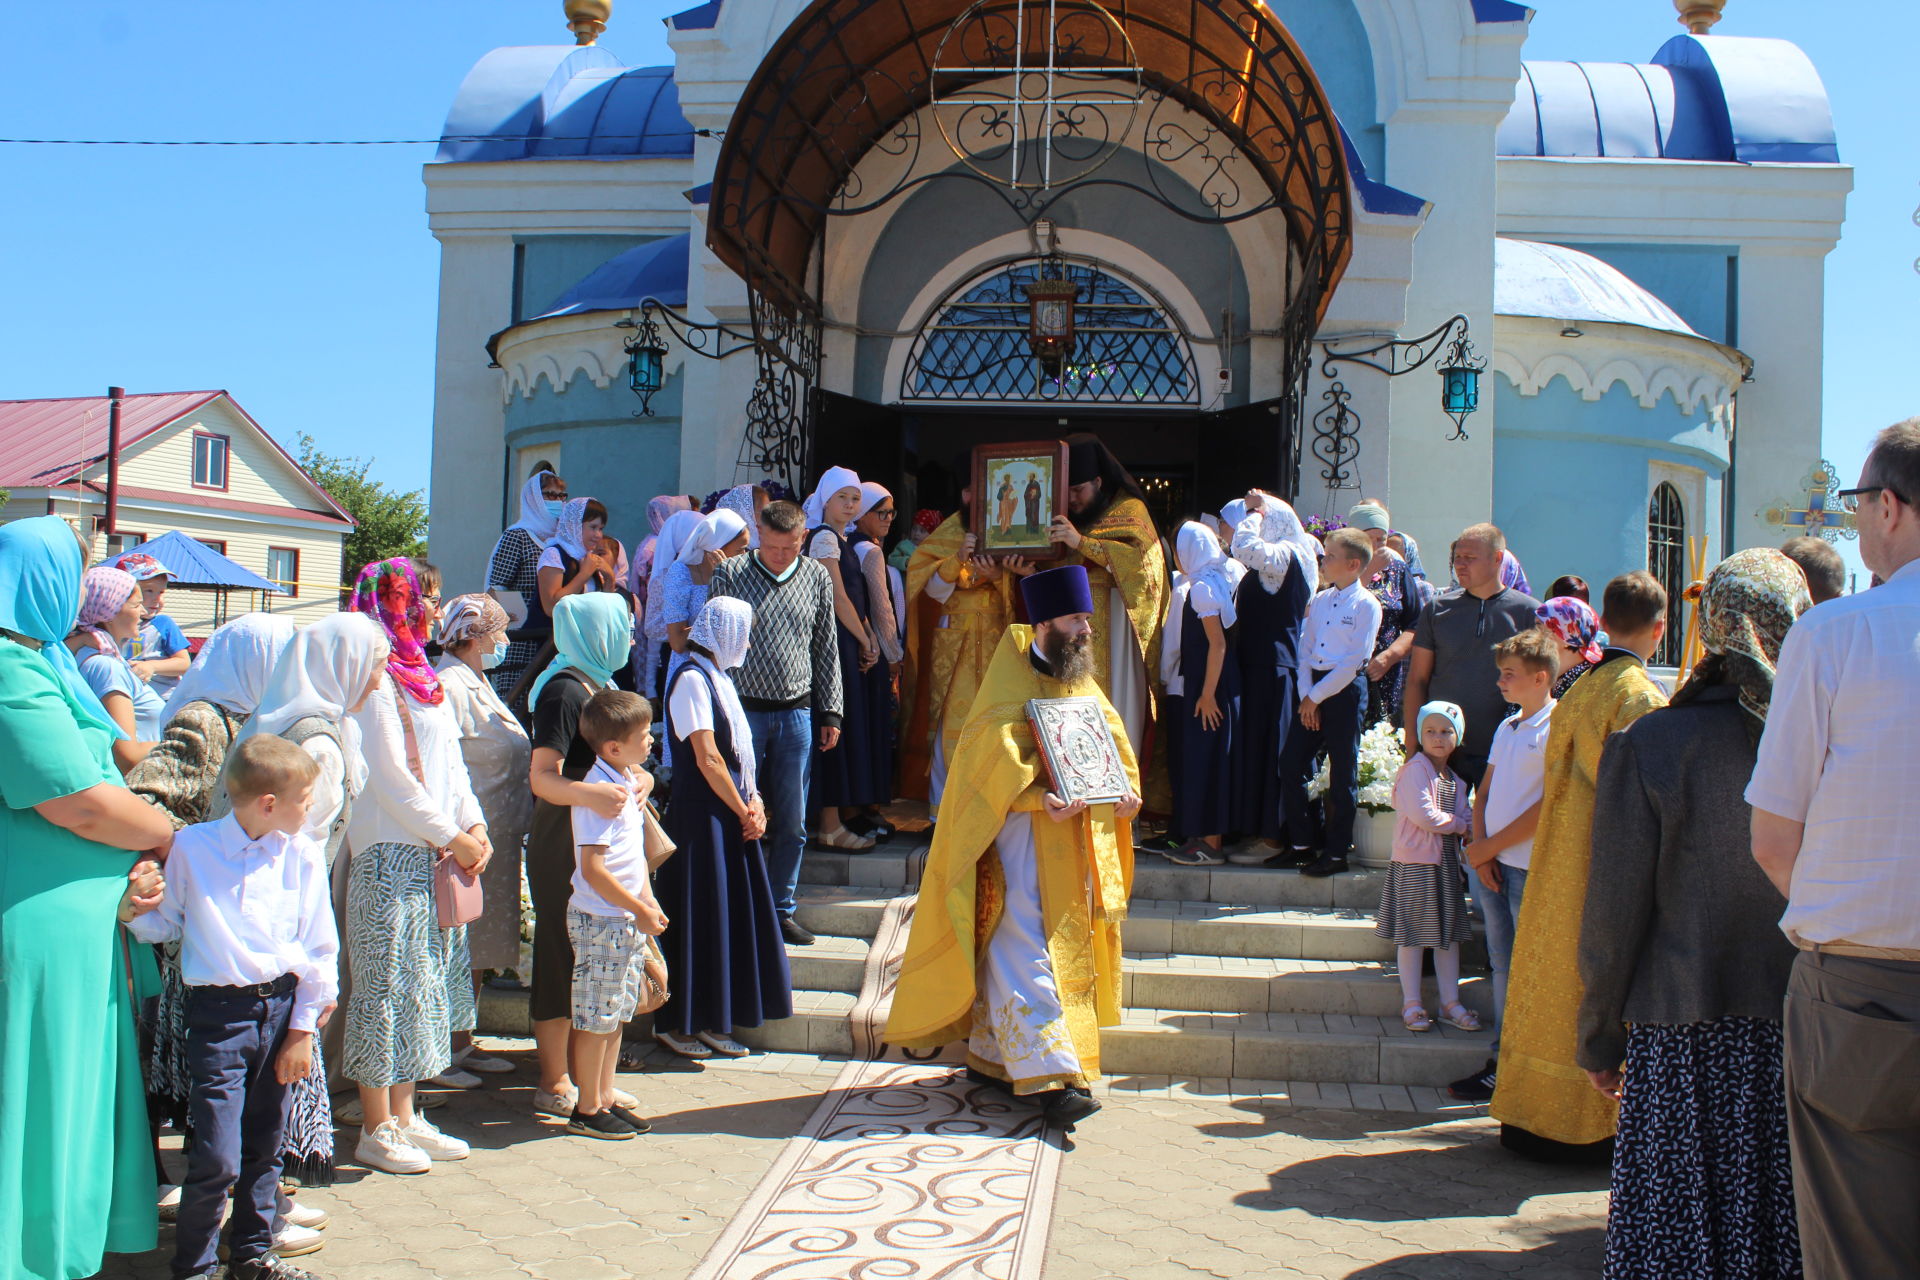 Изге бәйрәм көнендә митрополит Кирилл Кукмара Петропавлов храмында литургия кылды